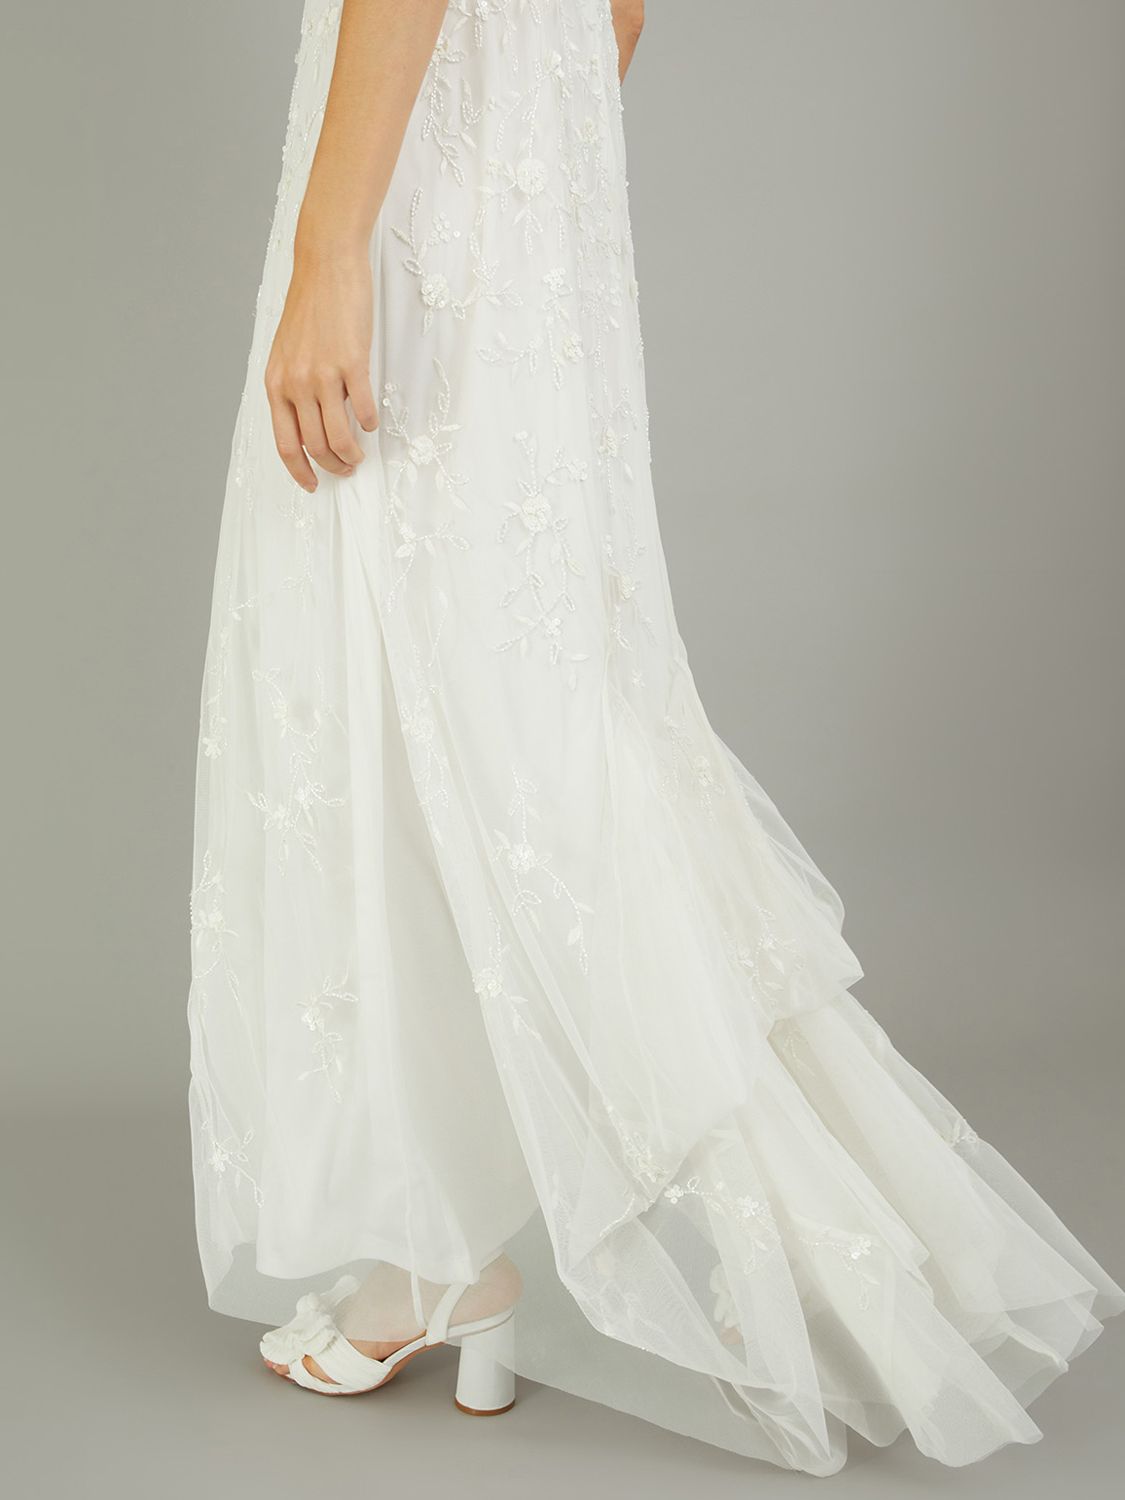 Monsoon Holly Embellished Wedding Dress, Ivory, 6